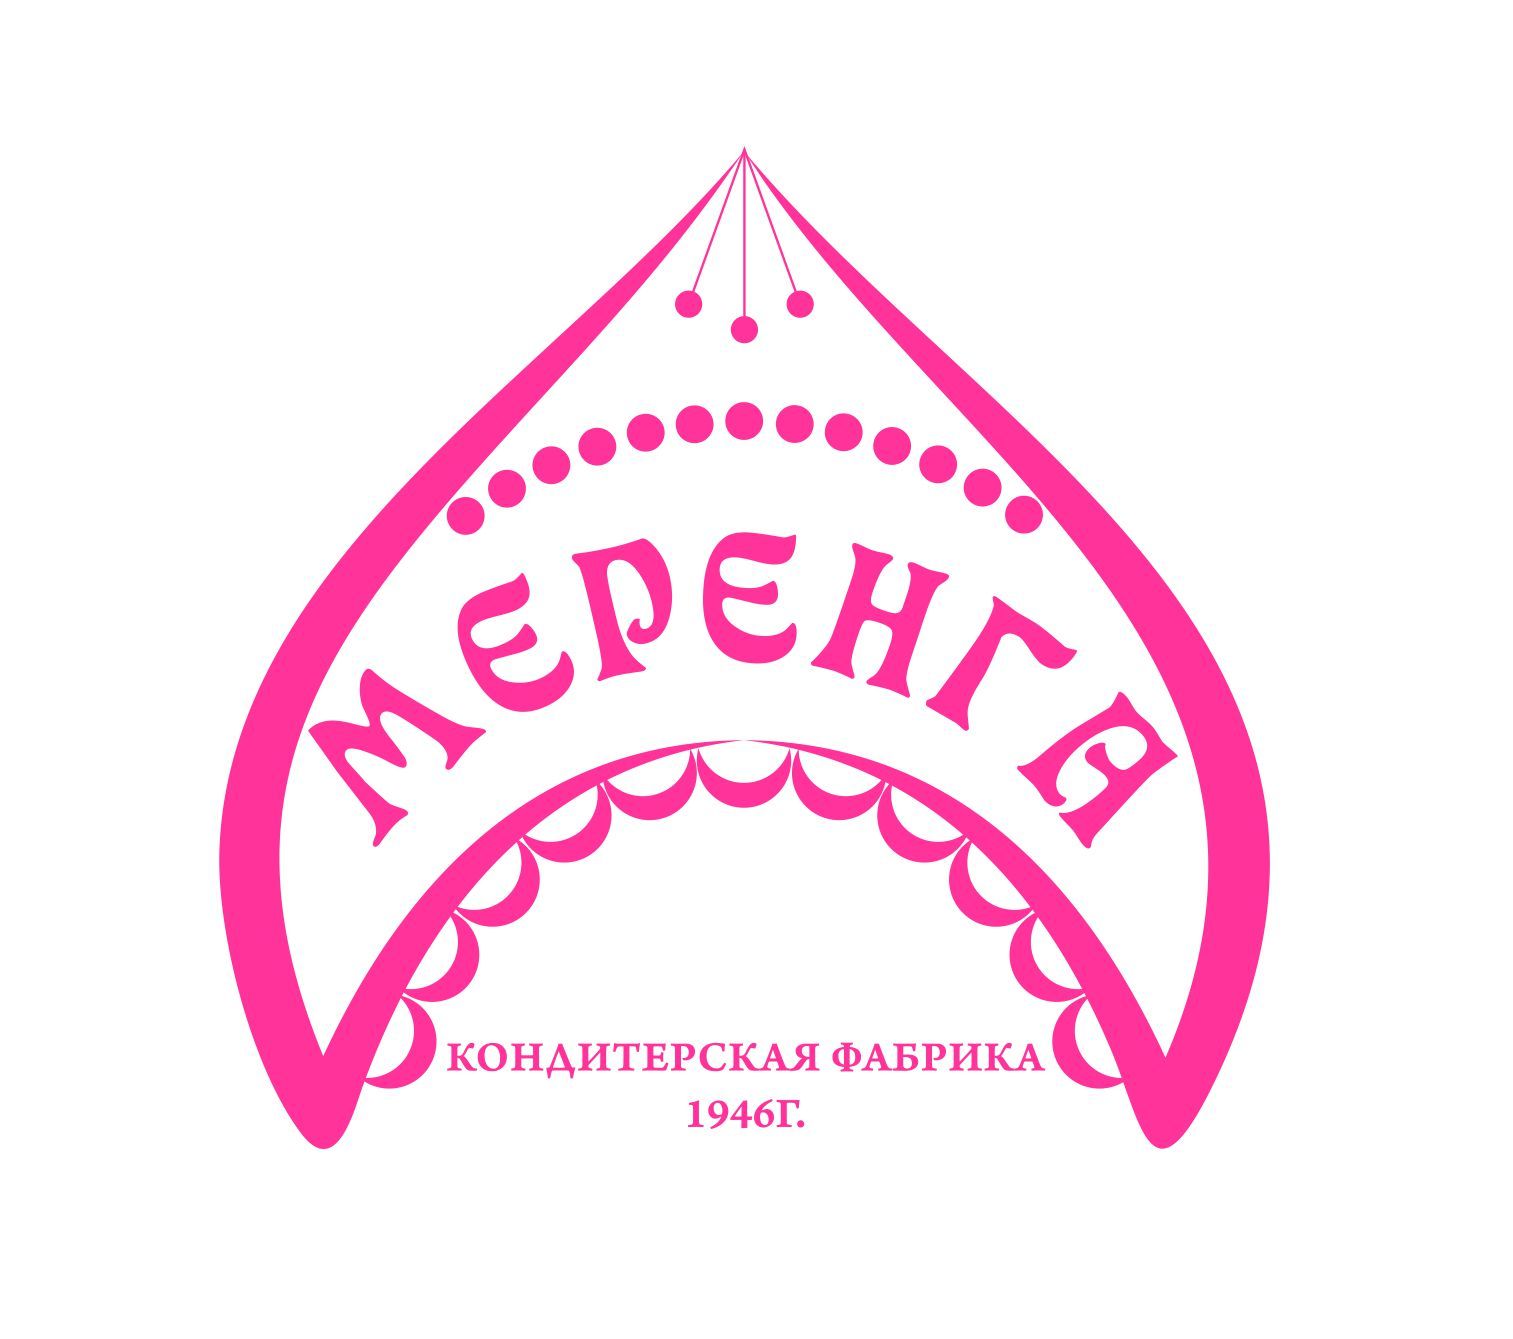 Логотип для кондитерской фабрики Меренга - дизайнер margol